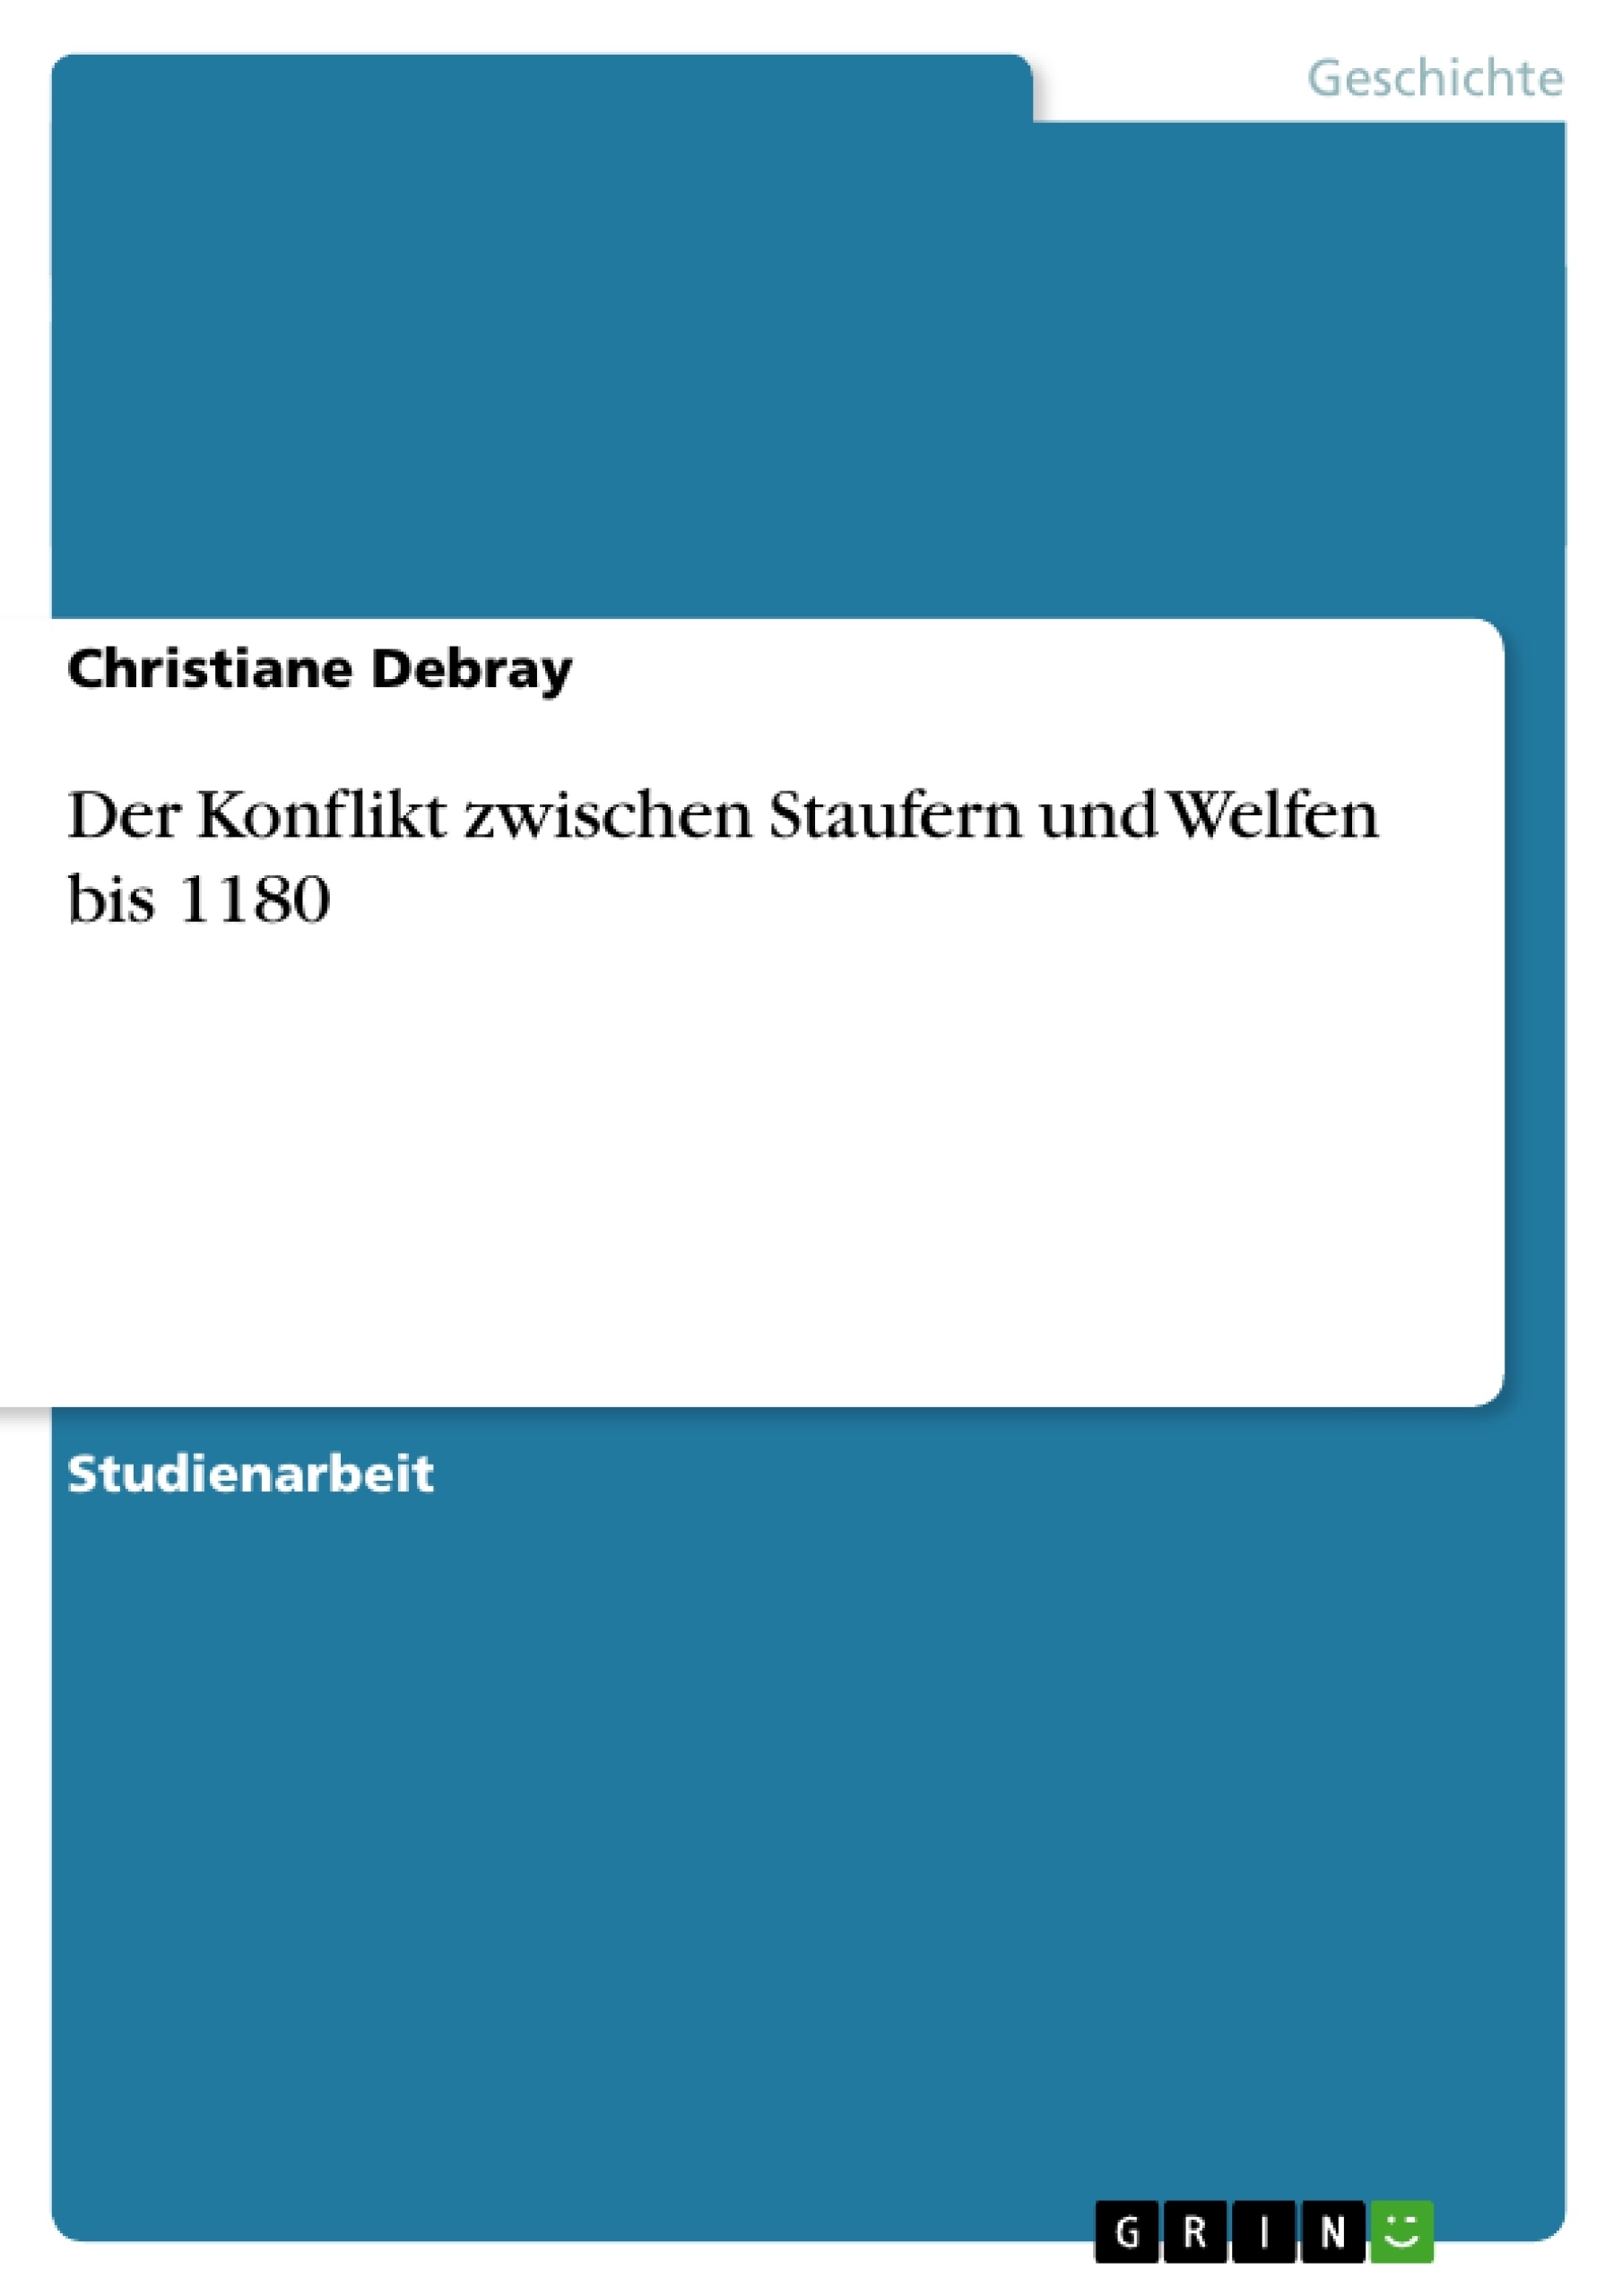 Título: Der Konflikt zwischen Staufern und Welfen bis 1180